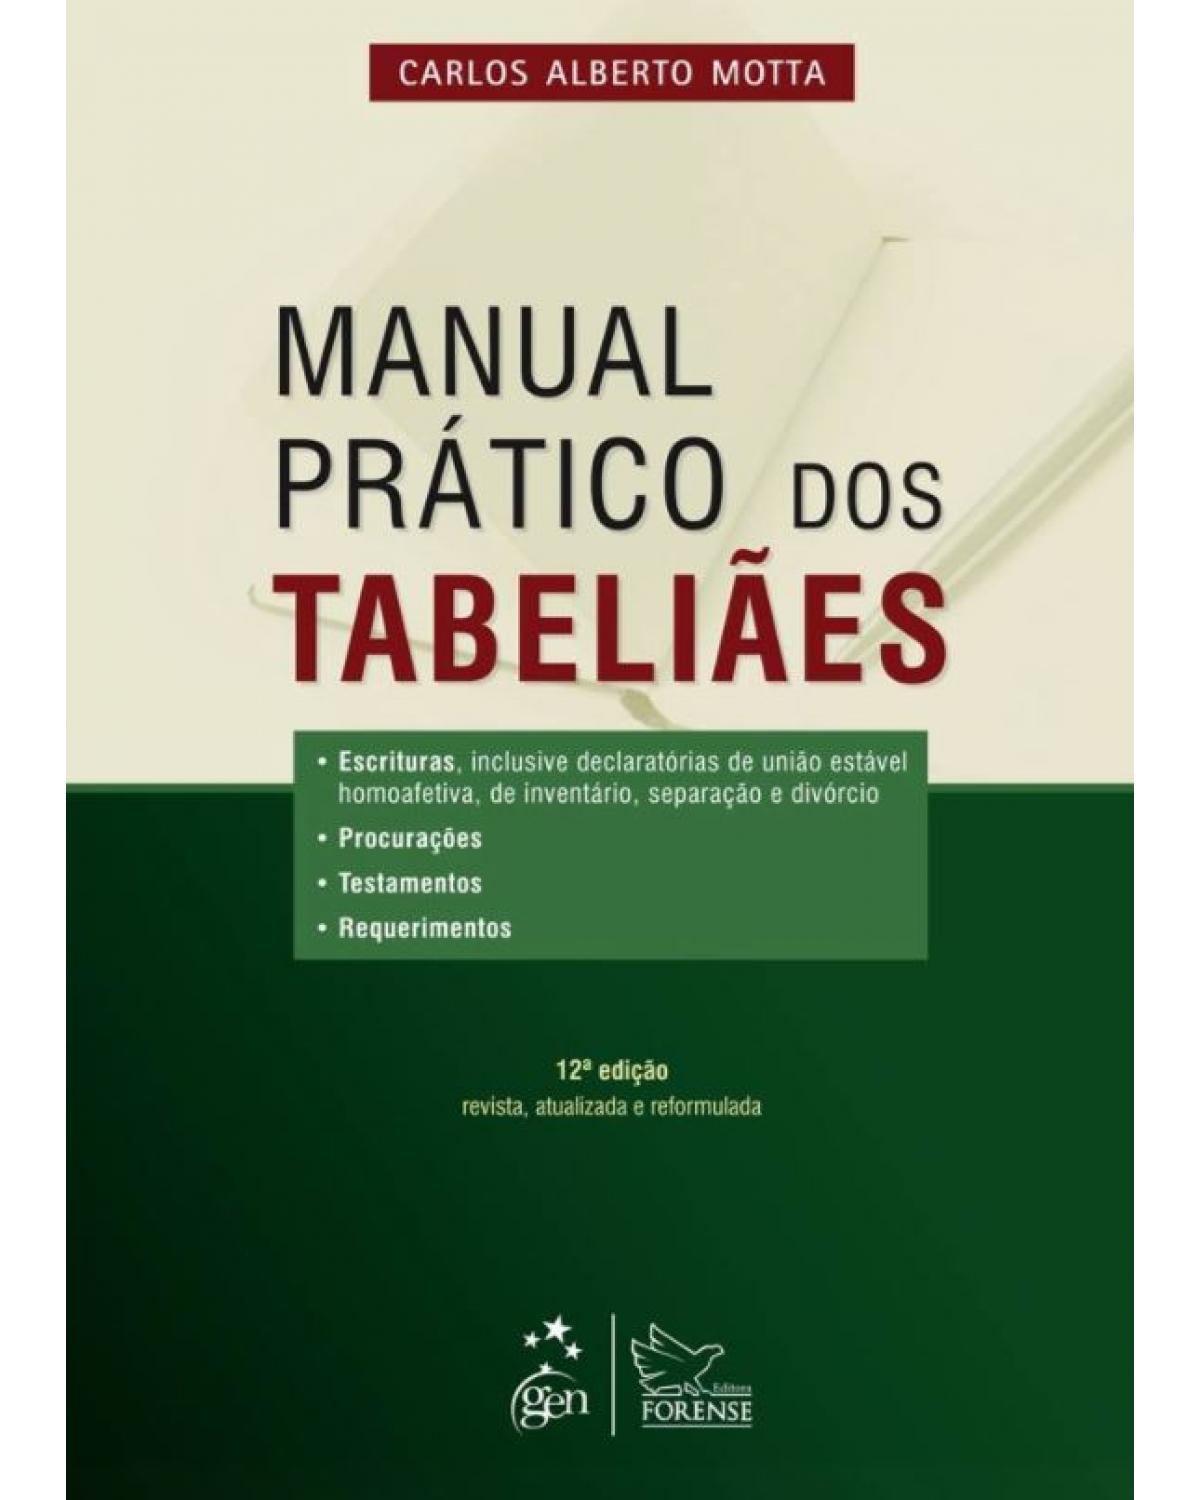 Manual prático dos tabeliães - 12ª Edição | 2013